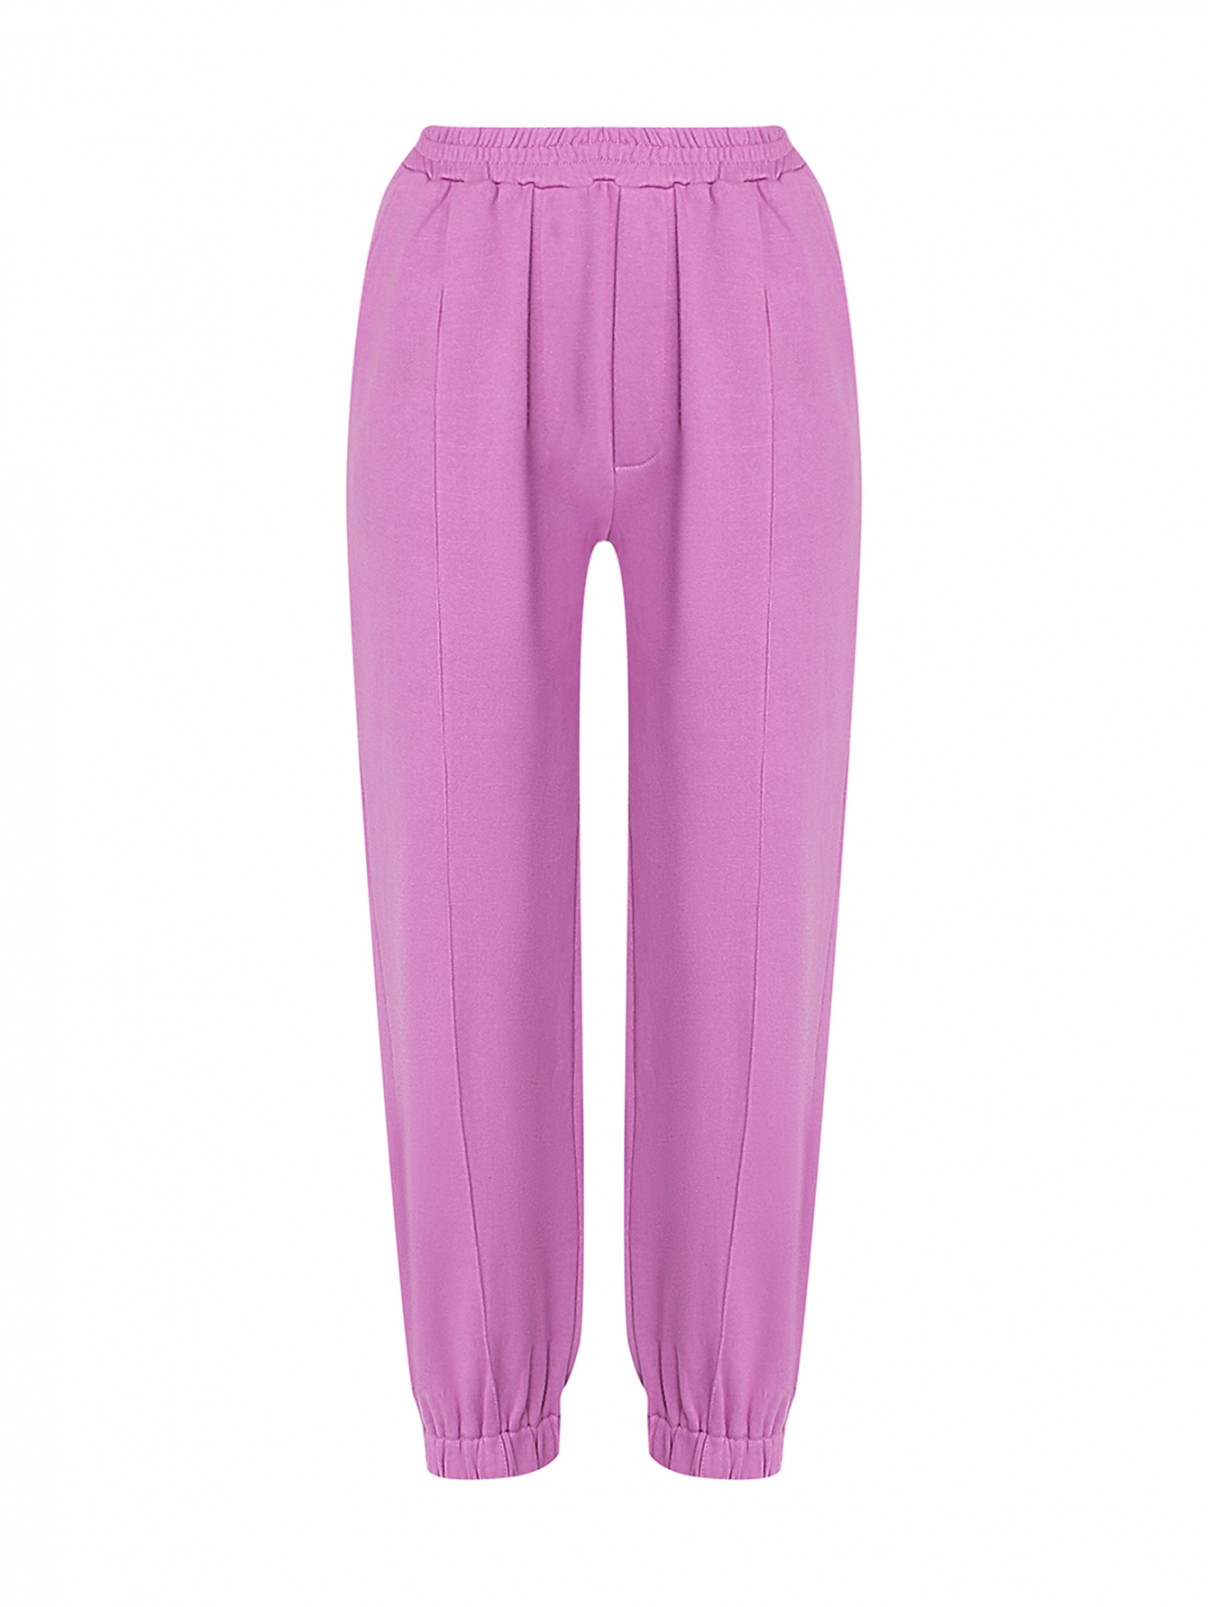 Трикотажные брюки на резинке с карманами Suncoo  –  Общий вид  – Цвет:  Фиолетовый